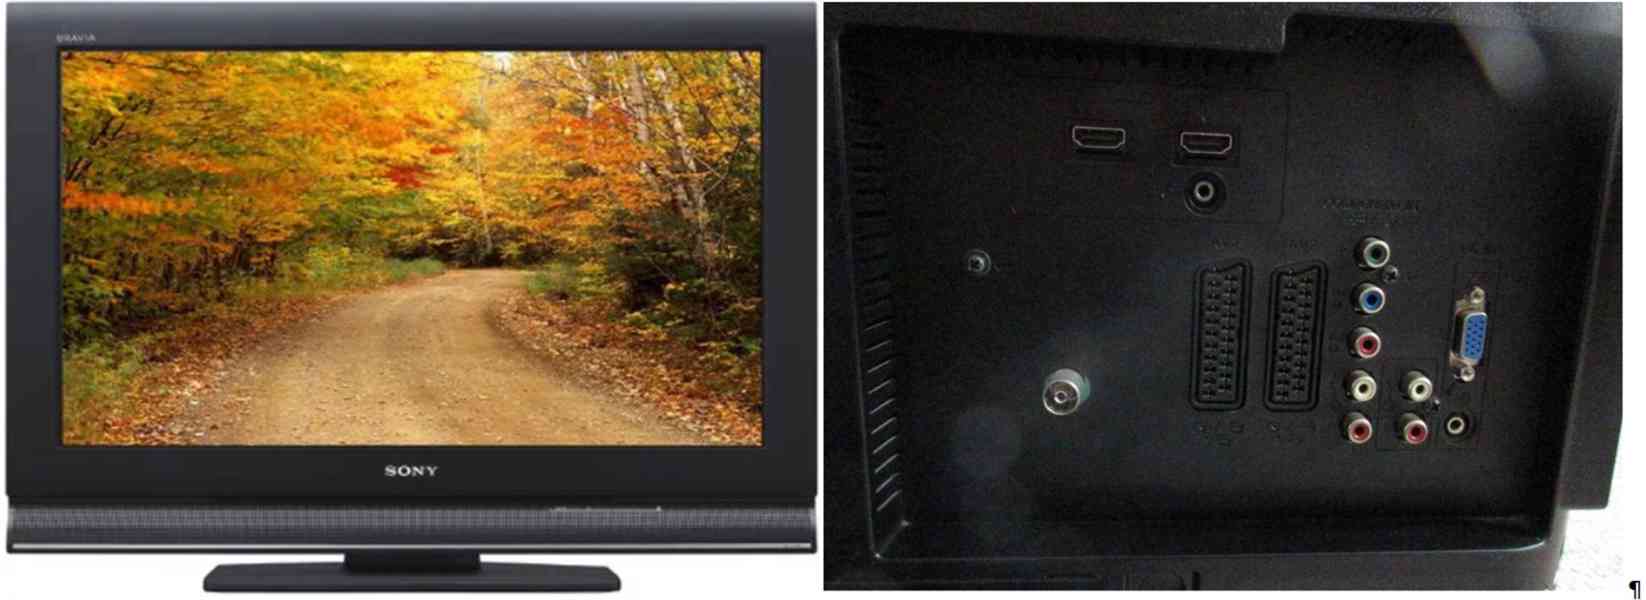 Televizor Sony Bravia KDL-32L4000 + set top box ZDARMA